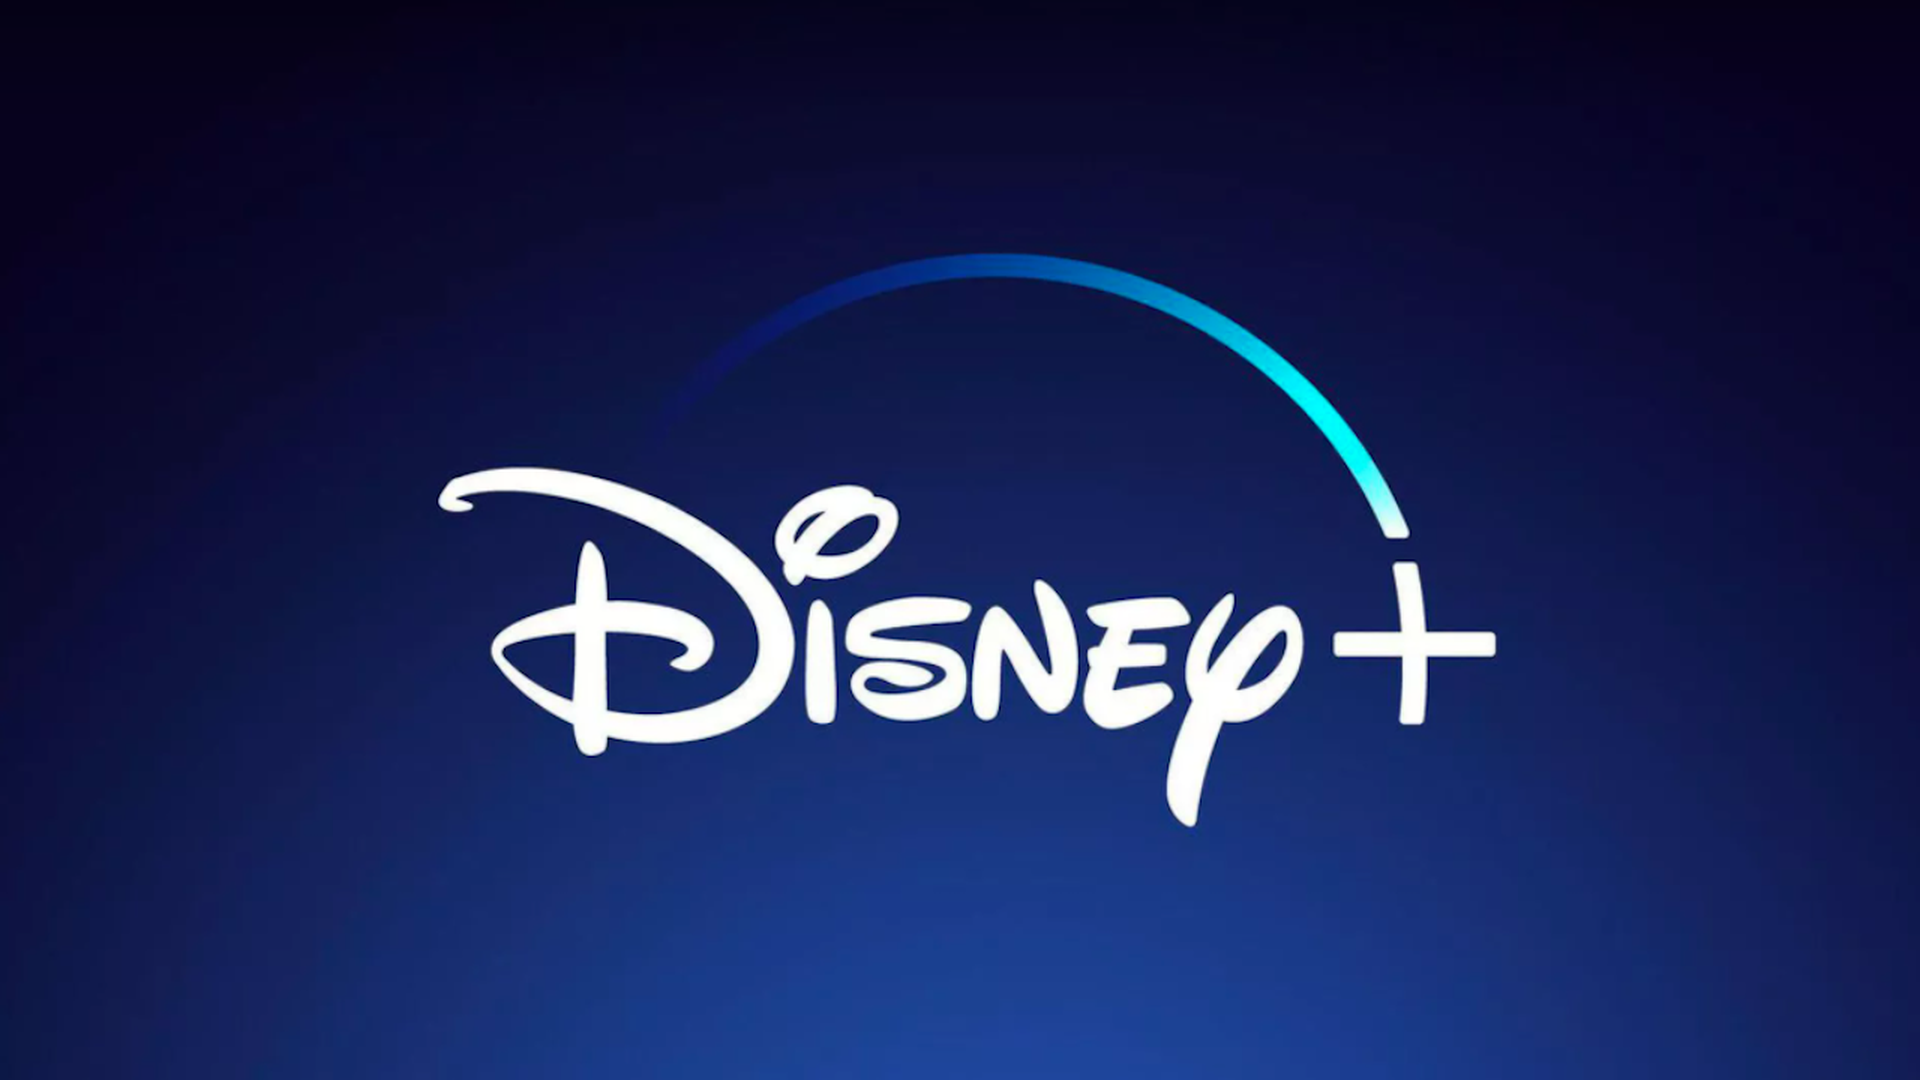 The Disney plus logo